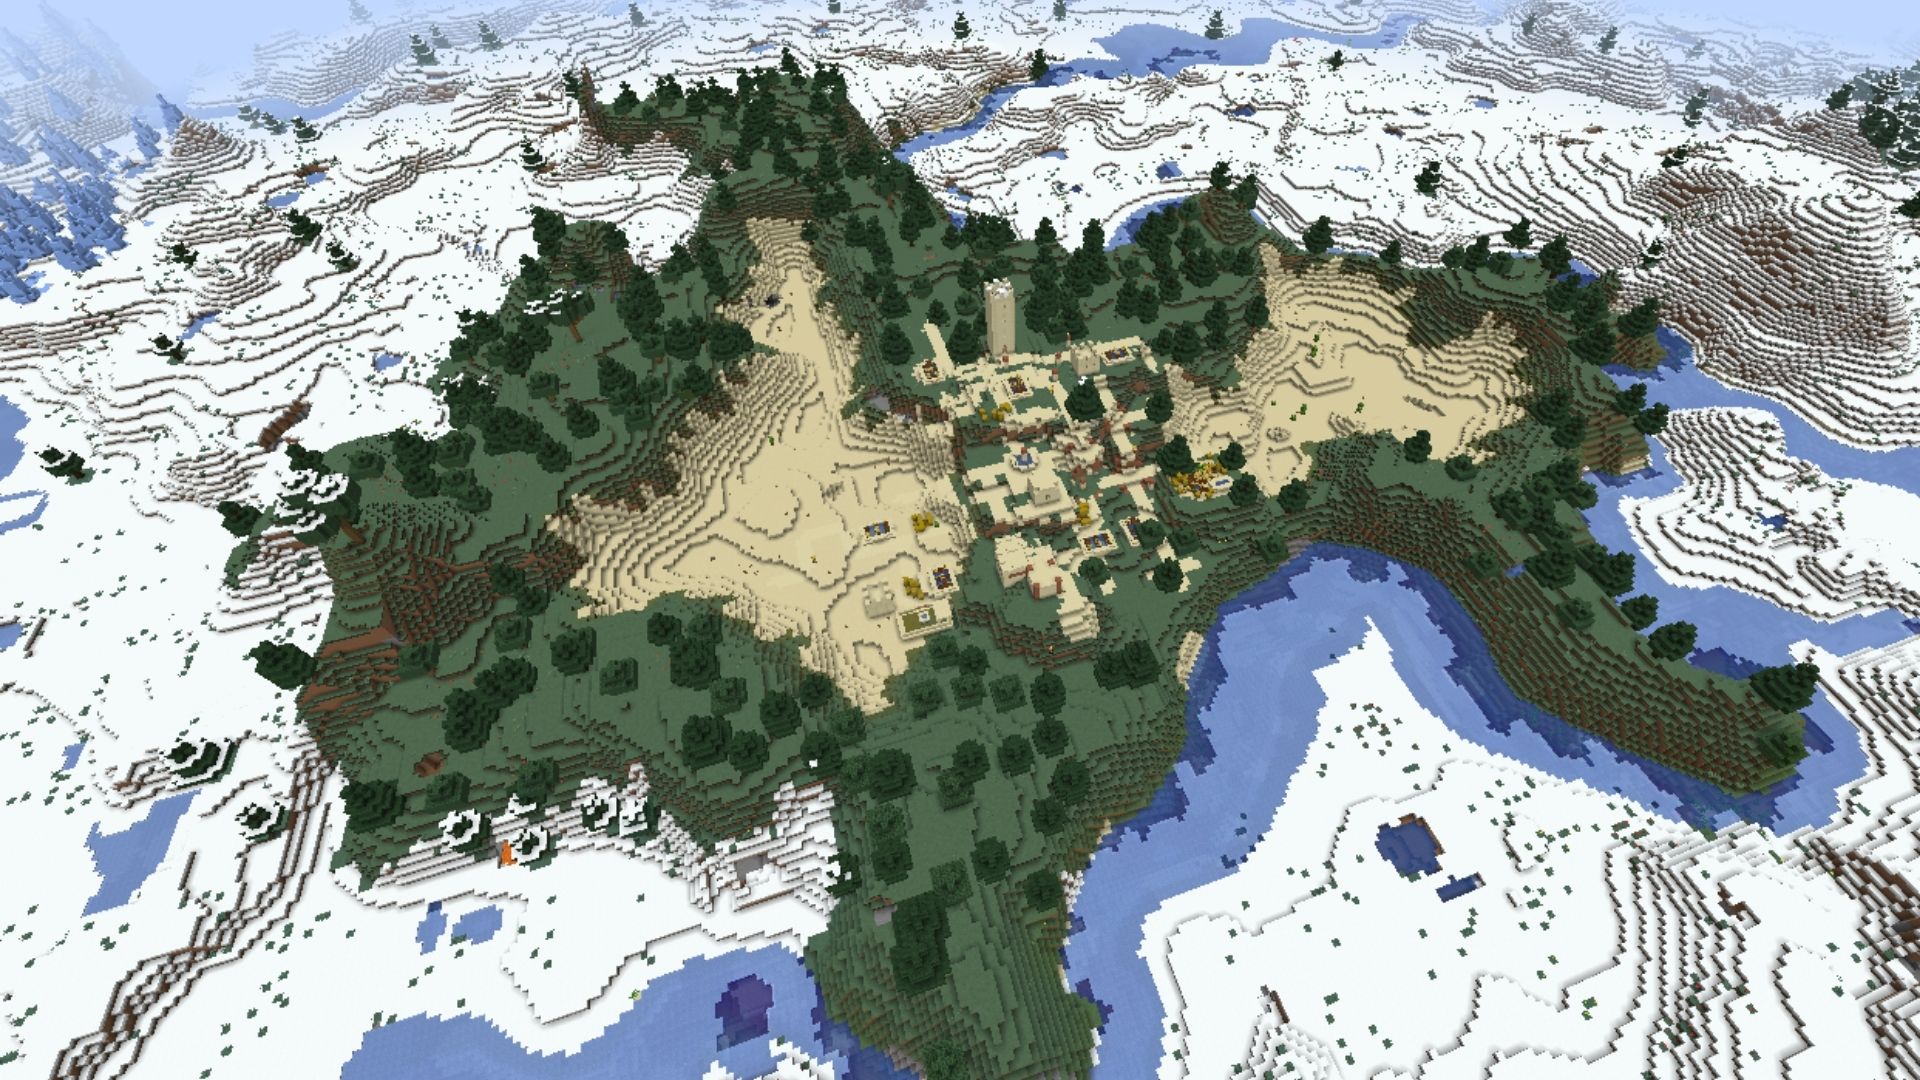 หมู่บ้านทะเลทรายที่ซ่อนอยู่ใน Minecraft ล้อมรอบด้วยน้ำ